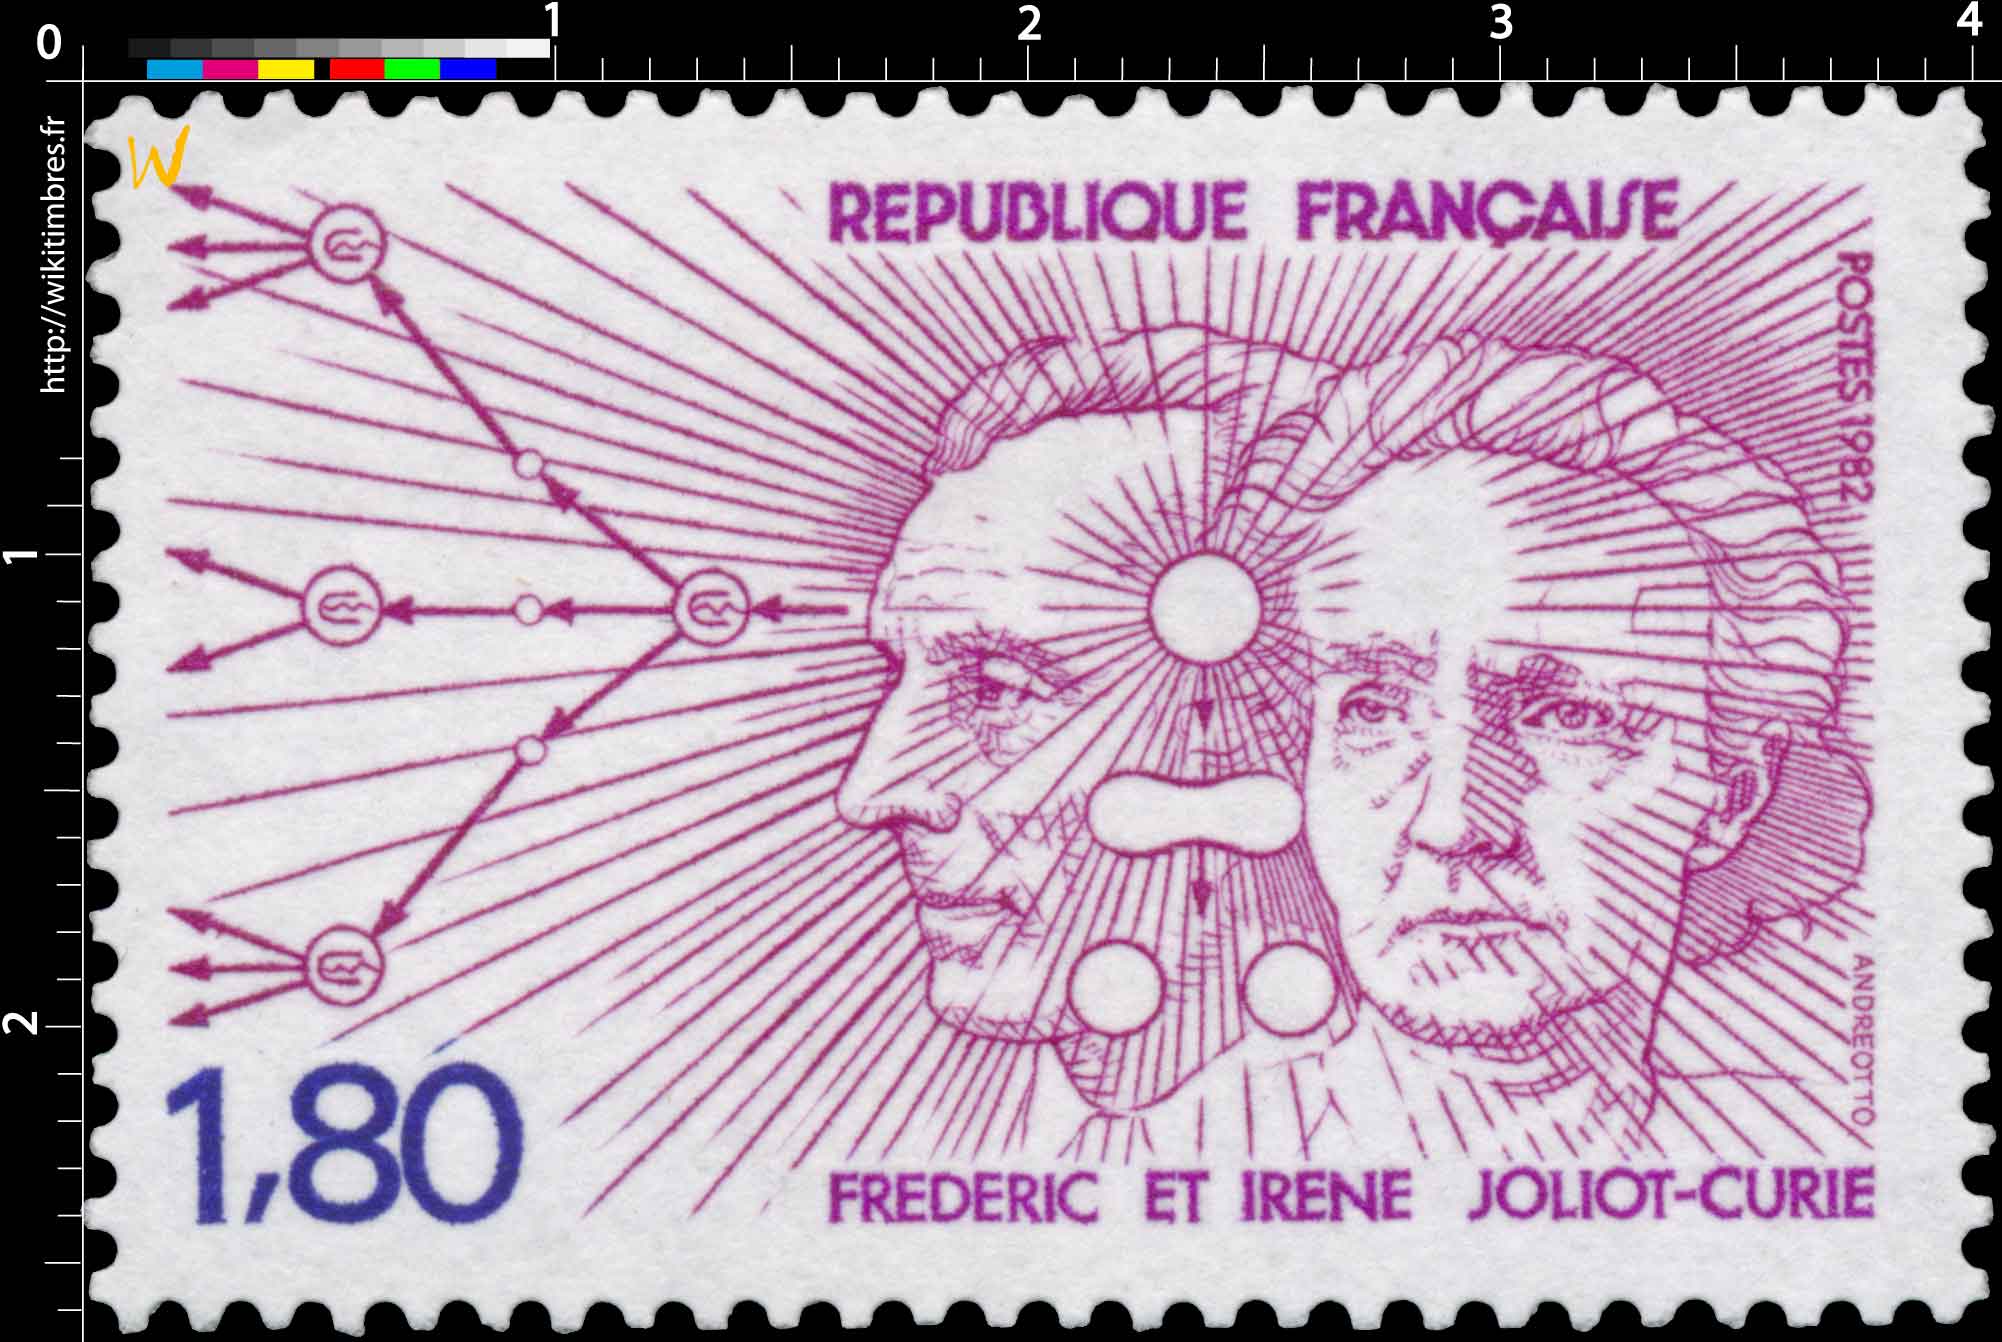 1982 FRÉDÉRIC ET IRÈNE JOLIOT-CURIE